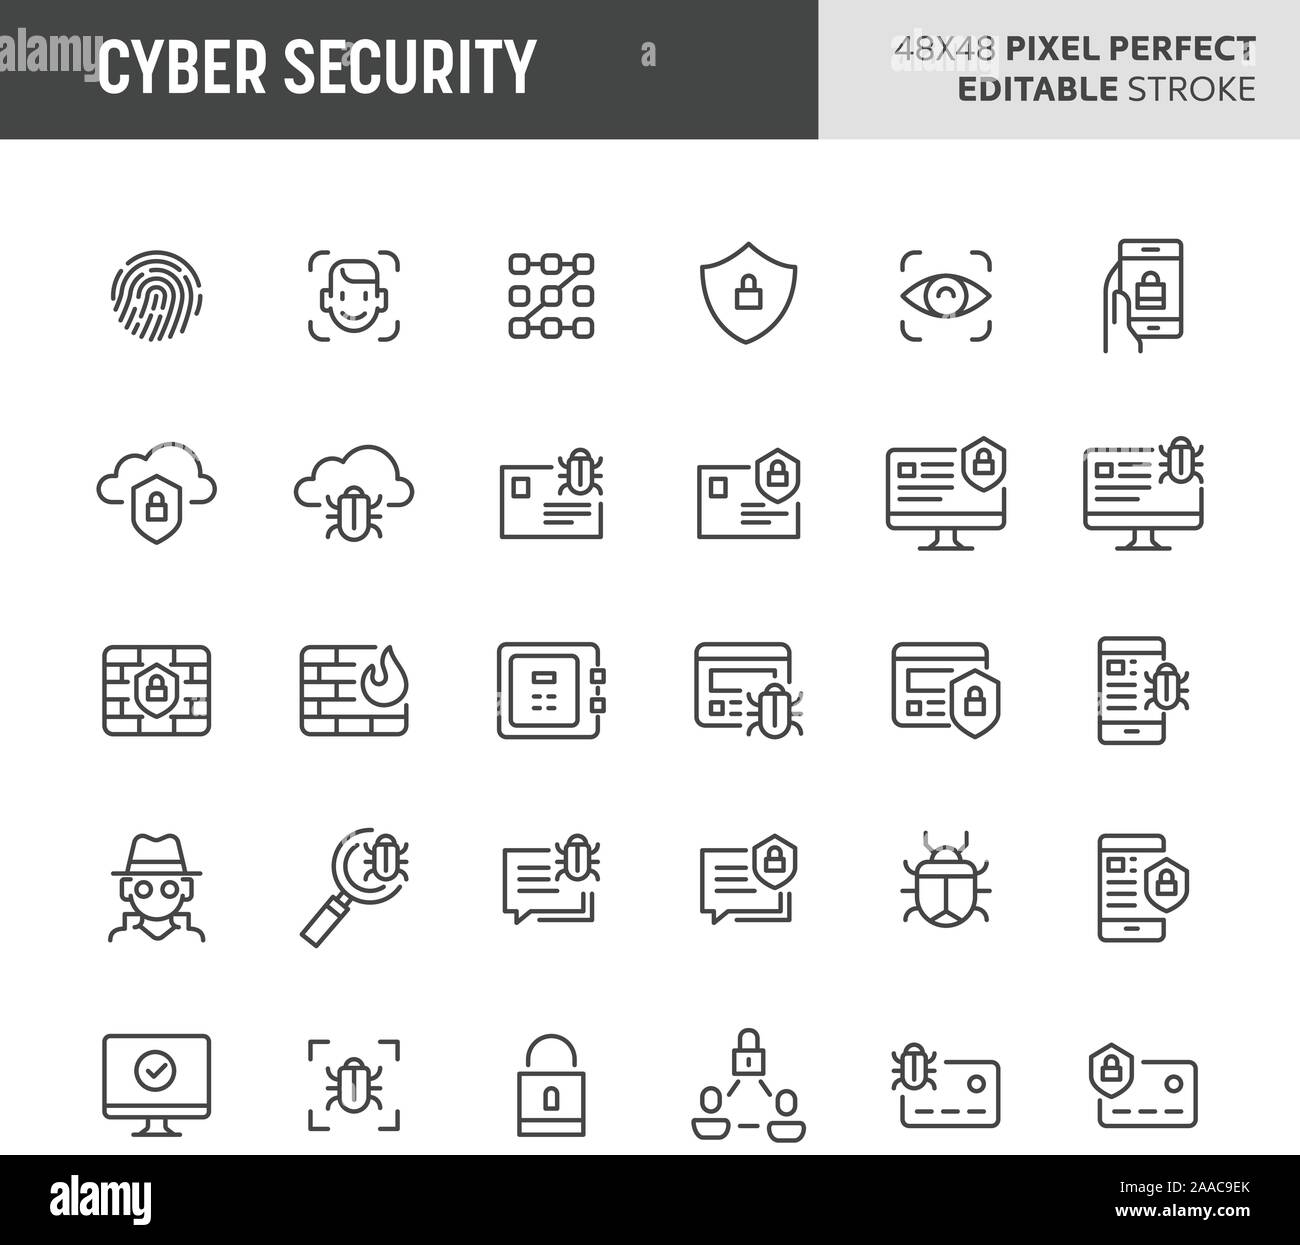 30 linea sottile icone associate con cyber security con il riconoscimento delle impronte digitali, face ID, mobile, cloud & computer di sicurezza sono incluse in questa serie. 4 Illustrazione Vettoriale